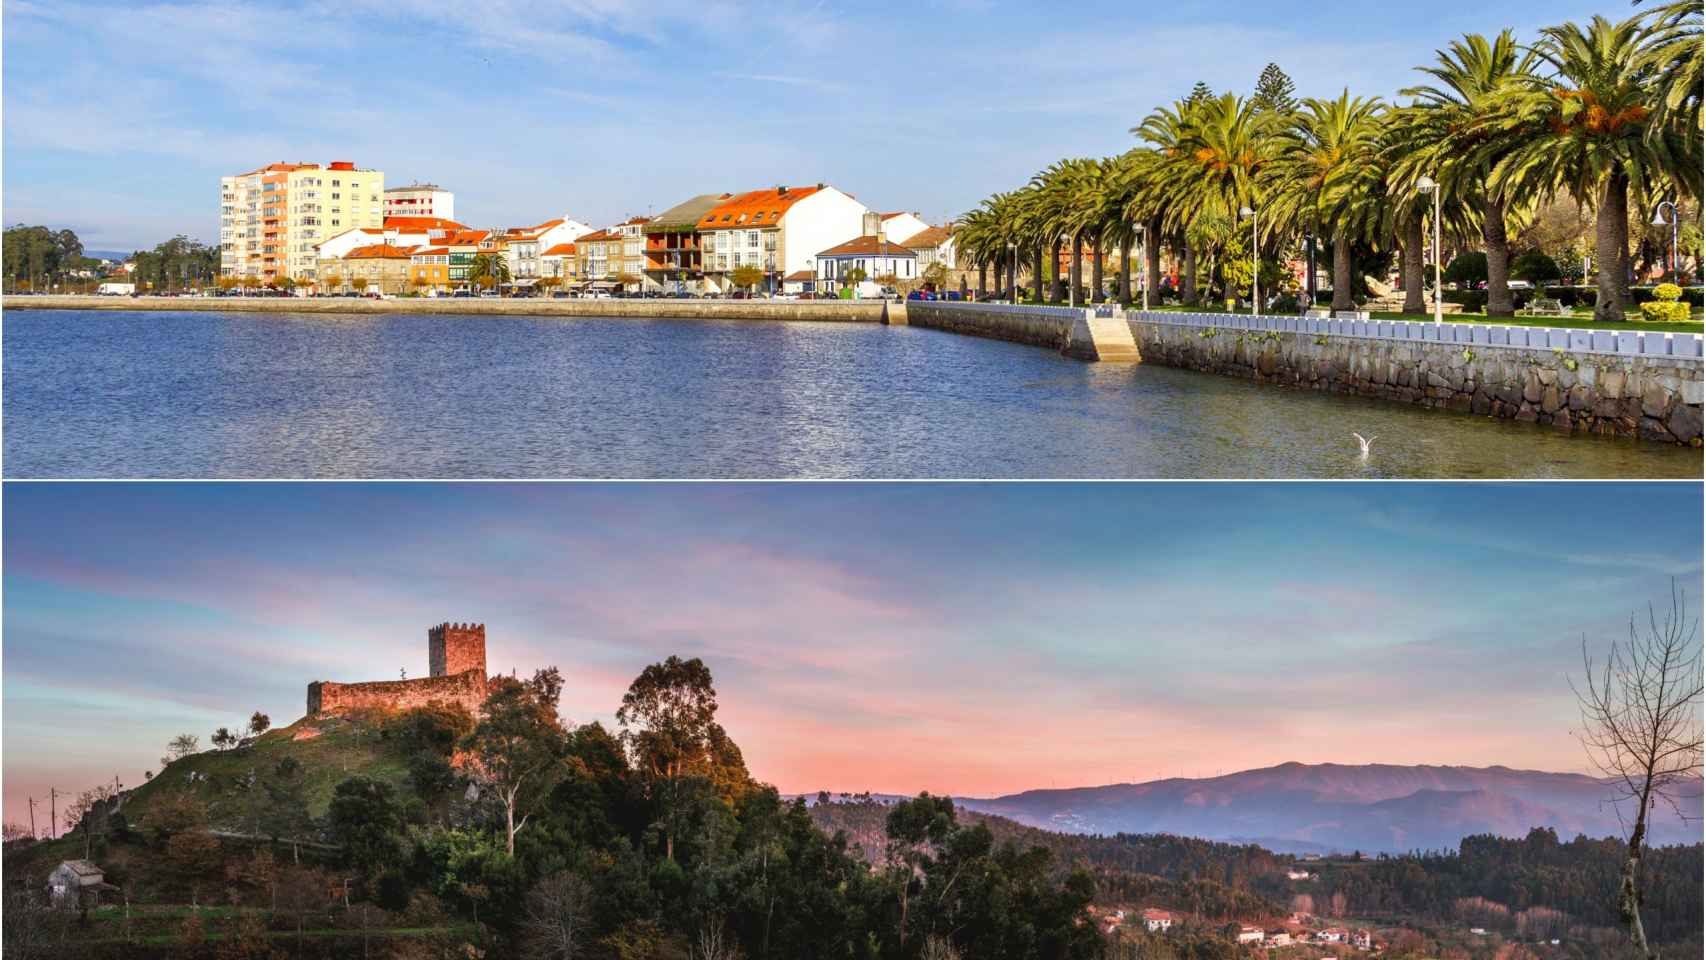 ¿Qué une a Cambados con la localidad portuguesa de Celorico de Basto?